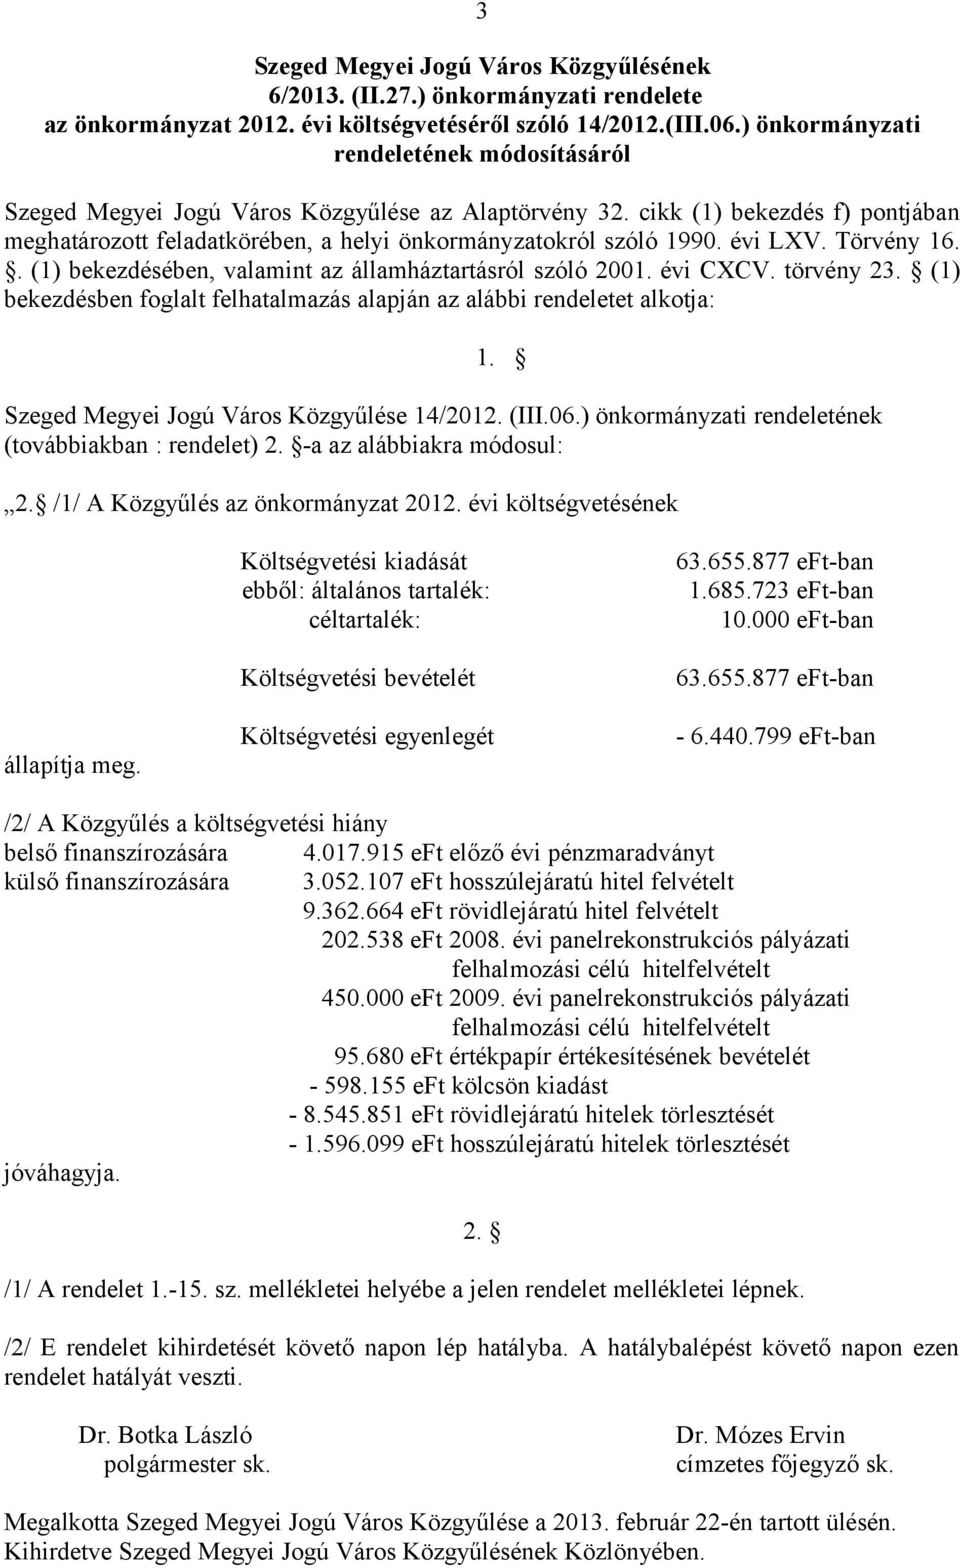 (1) bekezdésben foglalt felhatalmazás alapján az alábbi rendeletet alkotja: 1. Szeged Megyei Jogú Város Közgyűlése 14/212. (III.6.) önkormányzati rendeletének (továbbiakban : rendelet) 2.